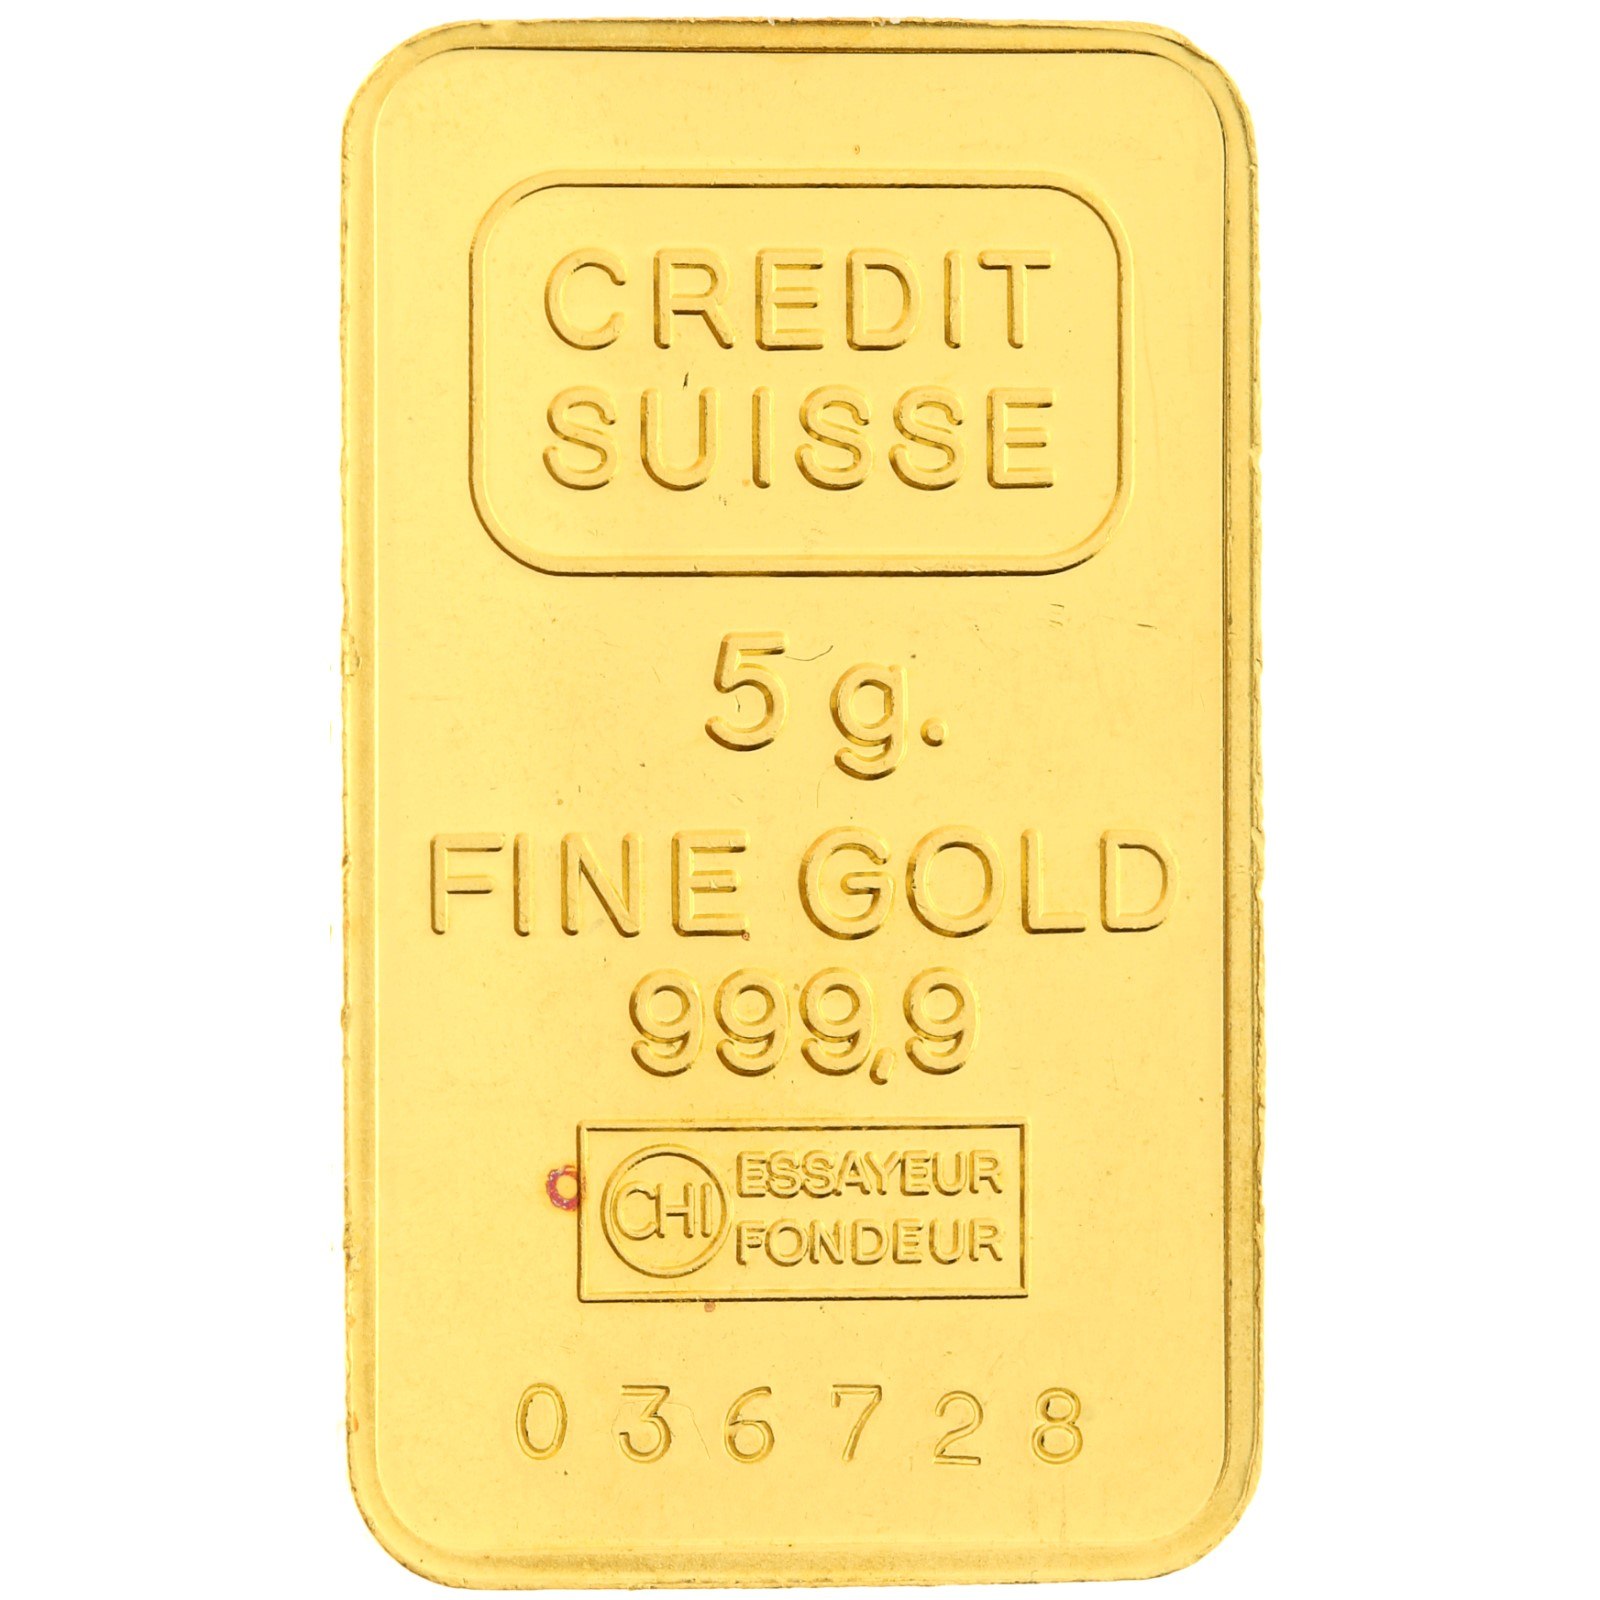 Credit Suisse - 5 gram - 1985 - gold bar - Libery Maxi-gram